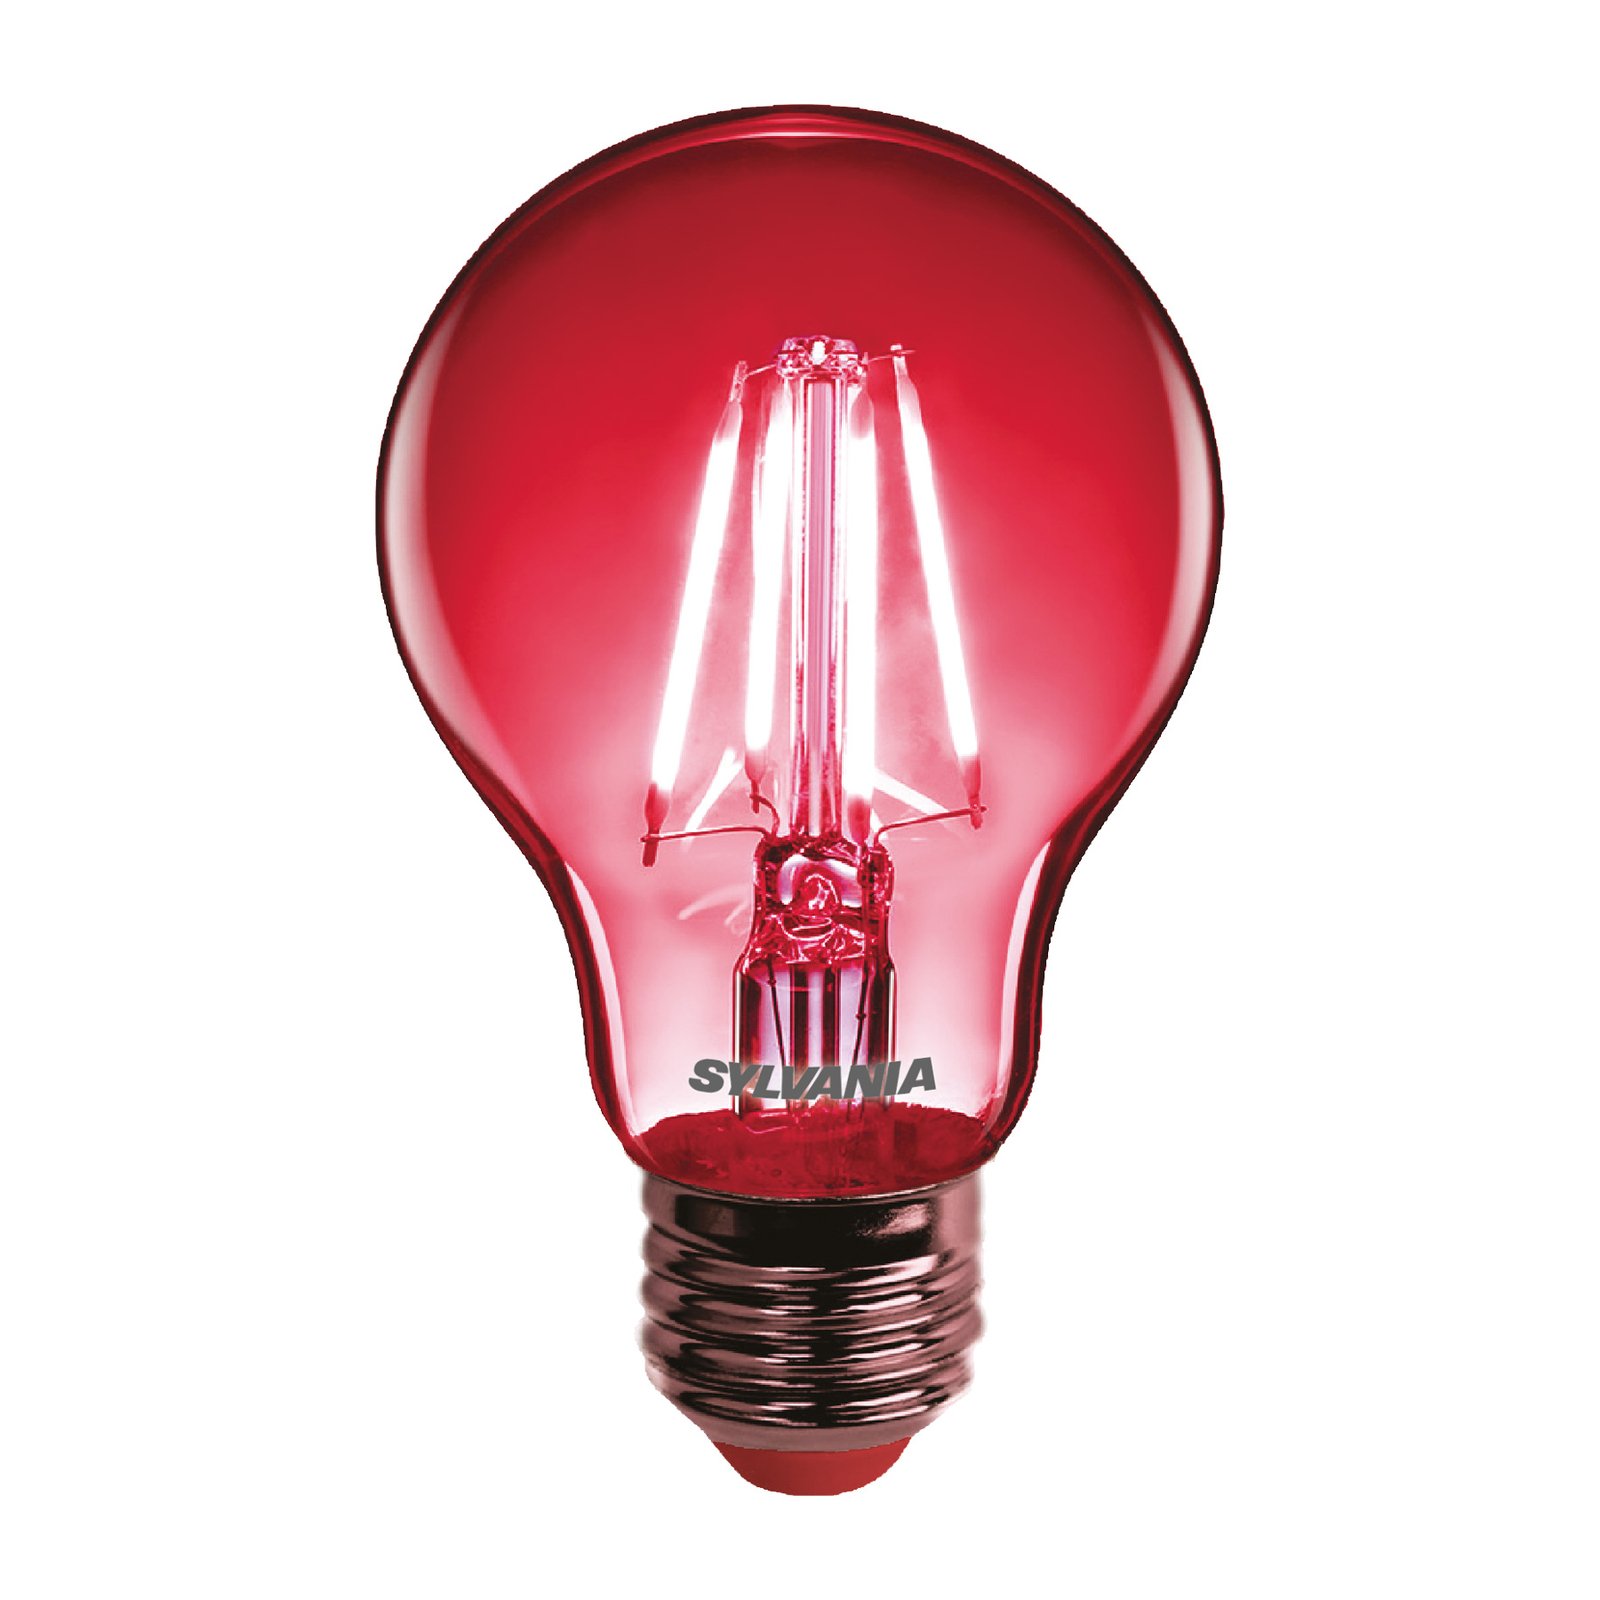 Sylvania ToLEDo rétro ampoule LED E27 4,1 W rouge